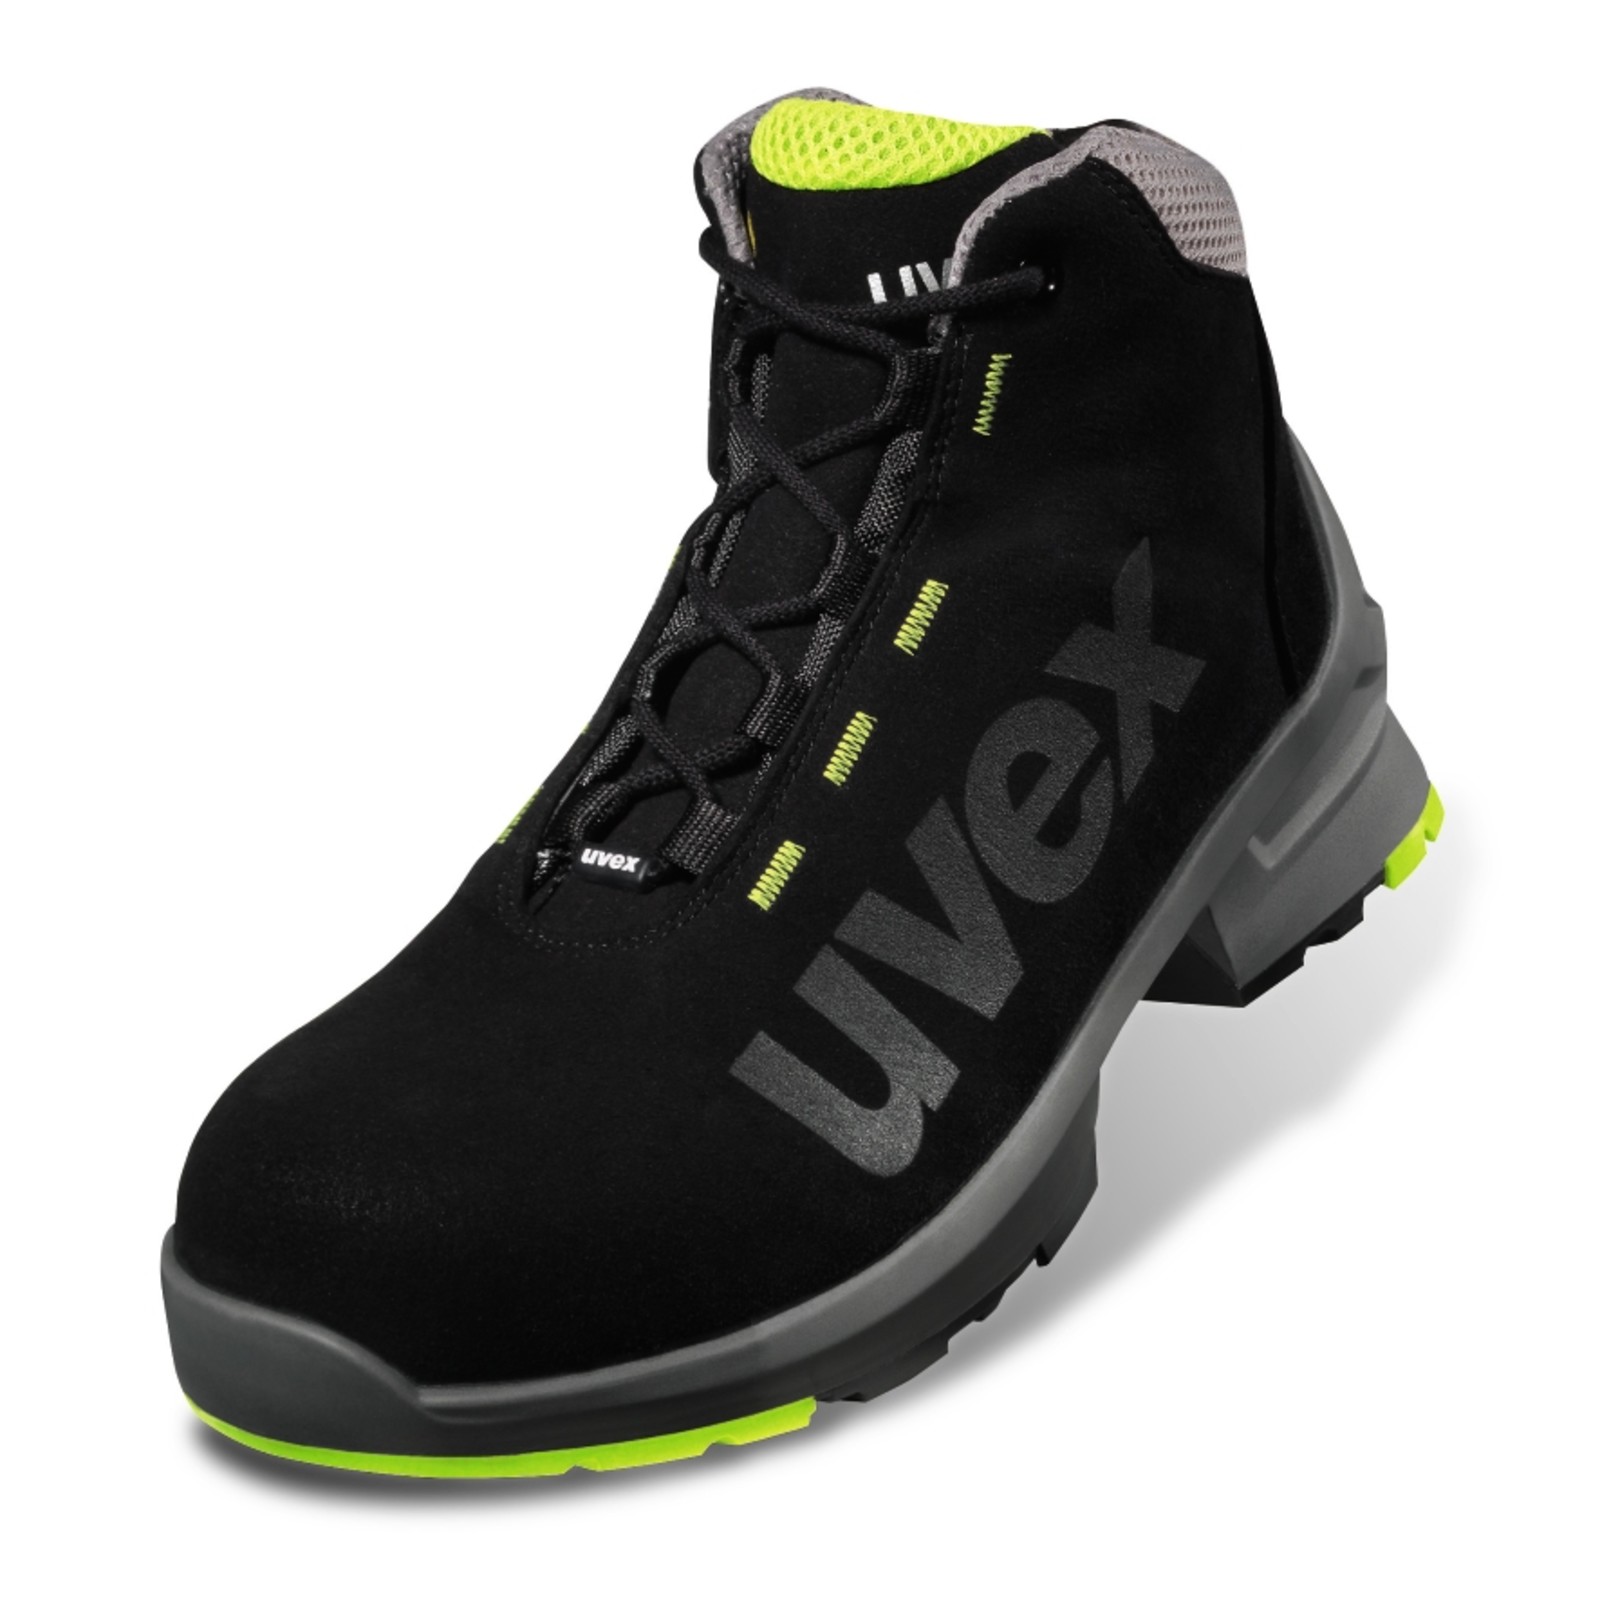 Pracovná obuv Uvex 1 S2 - veľkosť: 52, farba: čierna